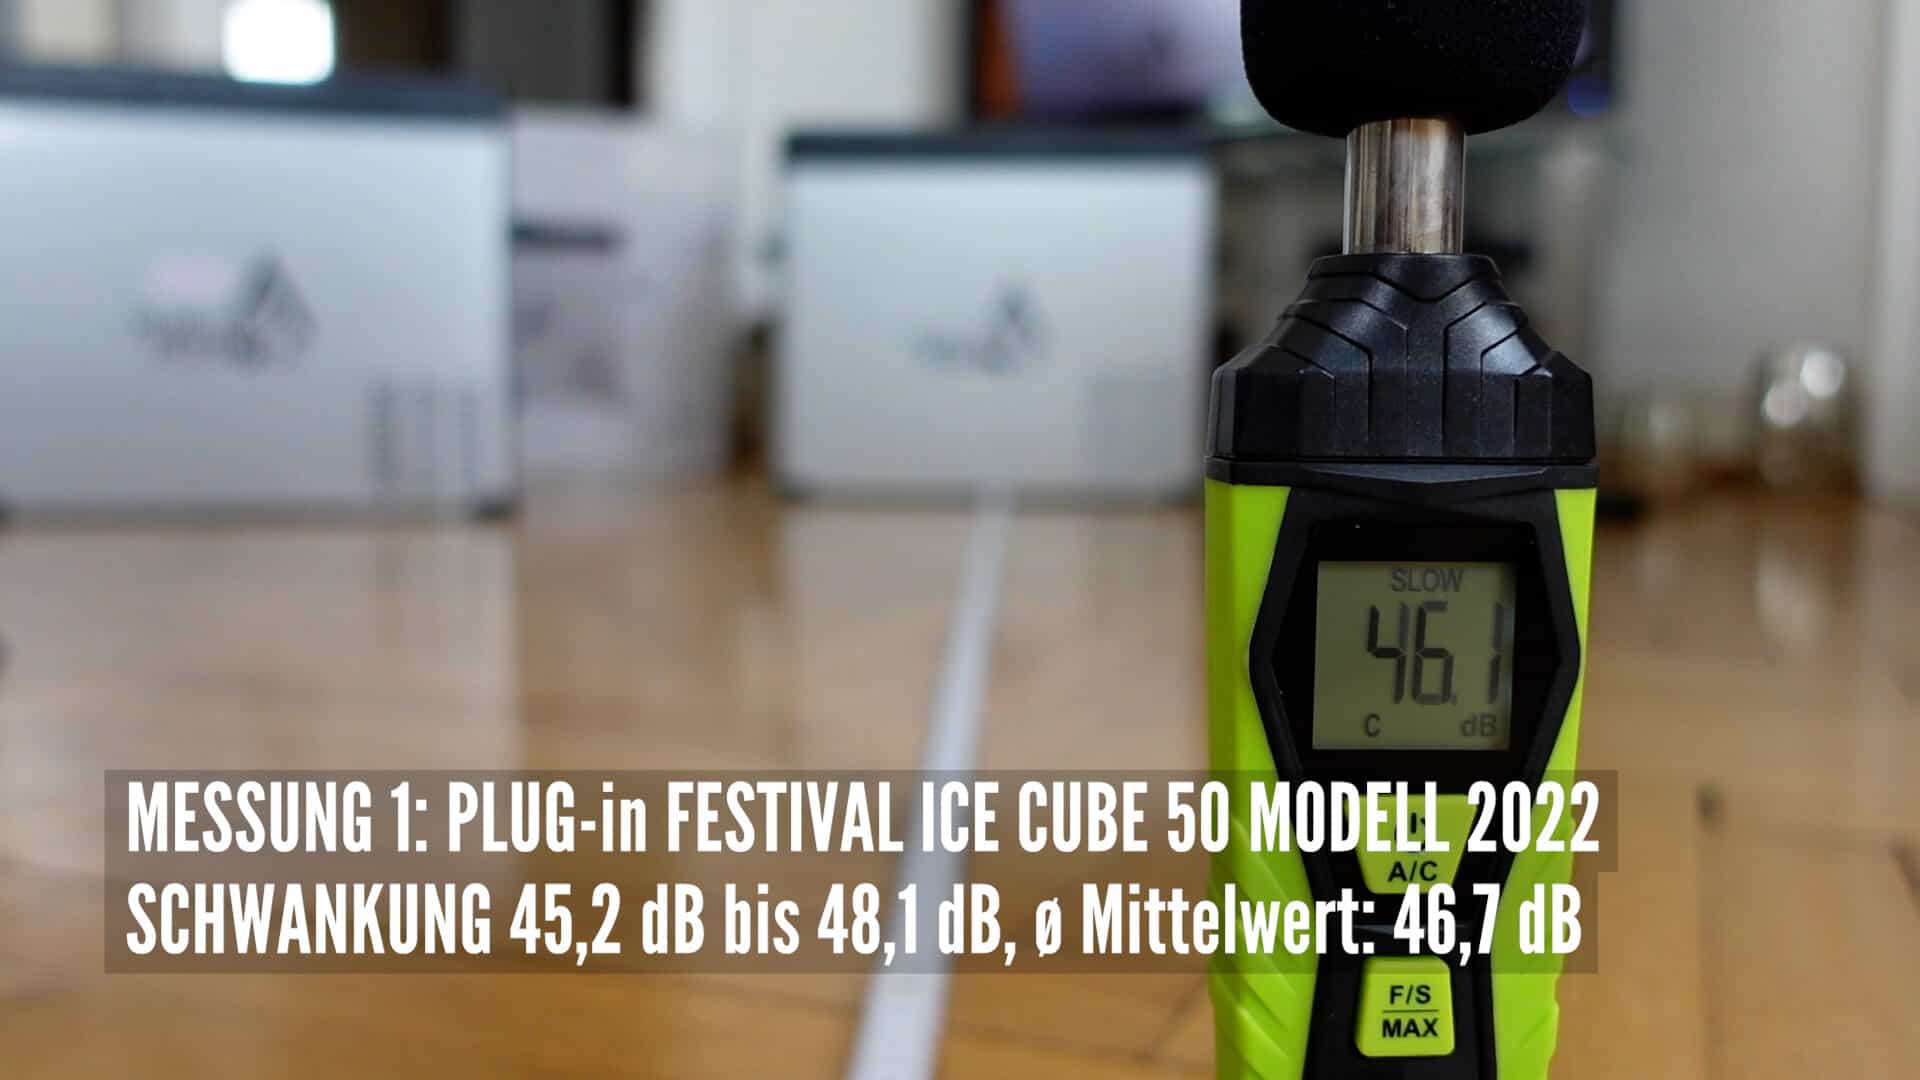 Kompressor Kühlbox Test: IceCube 50 von Plug-in-Festivals im Check (Update  Modell 2023 mit qAir Lüftersystem)